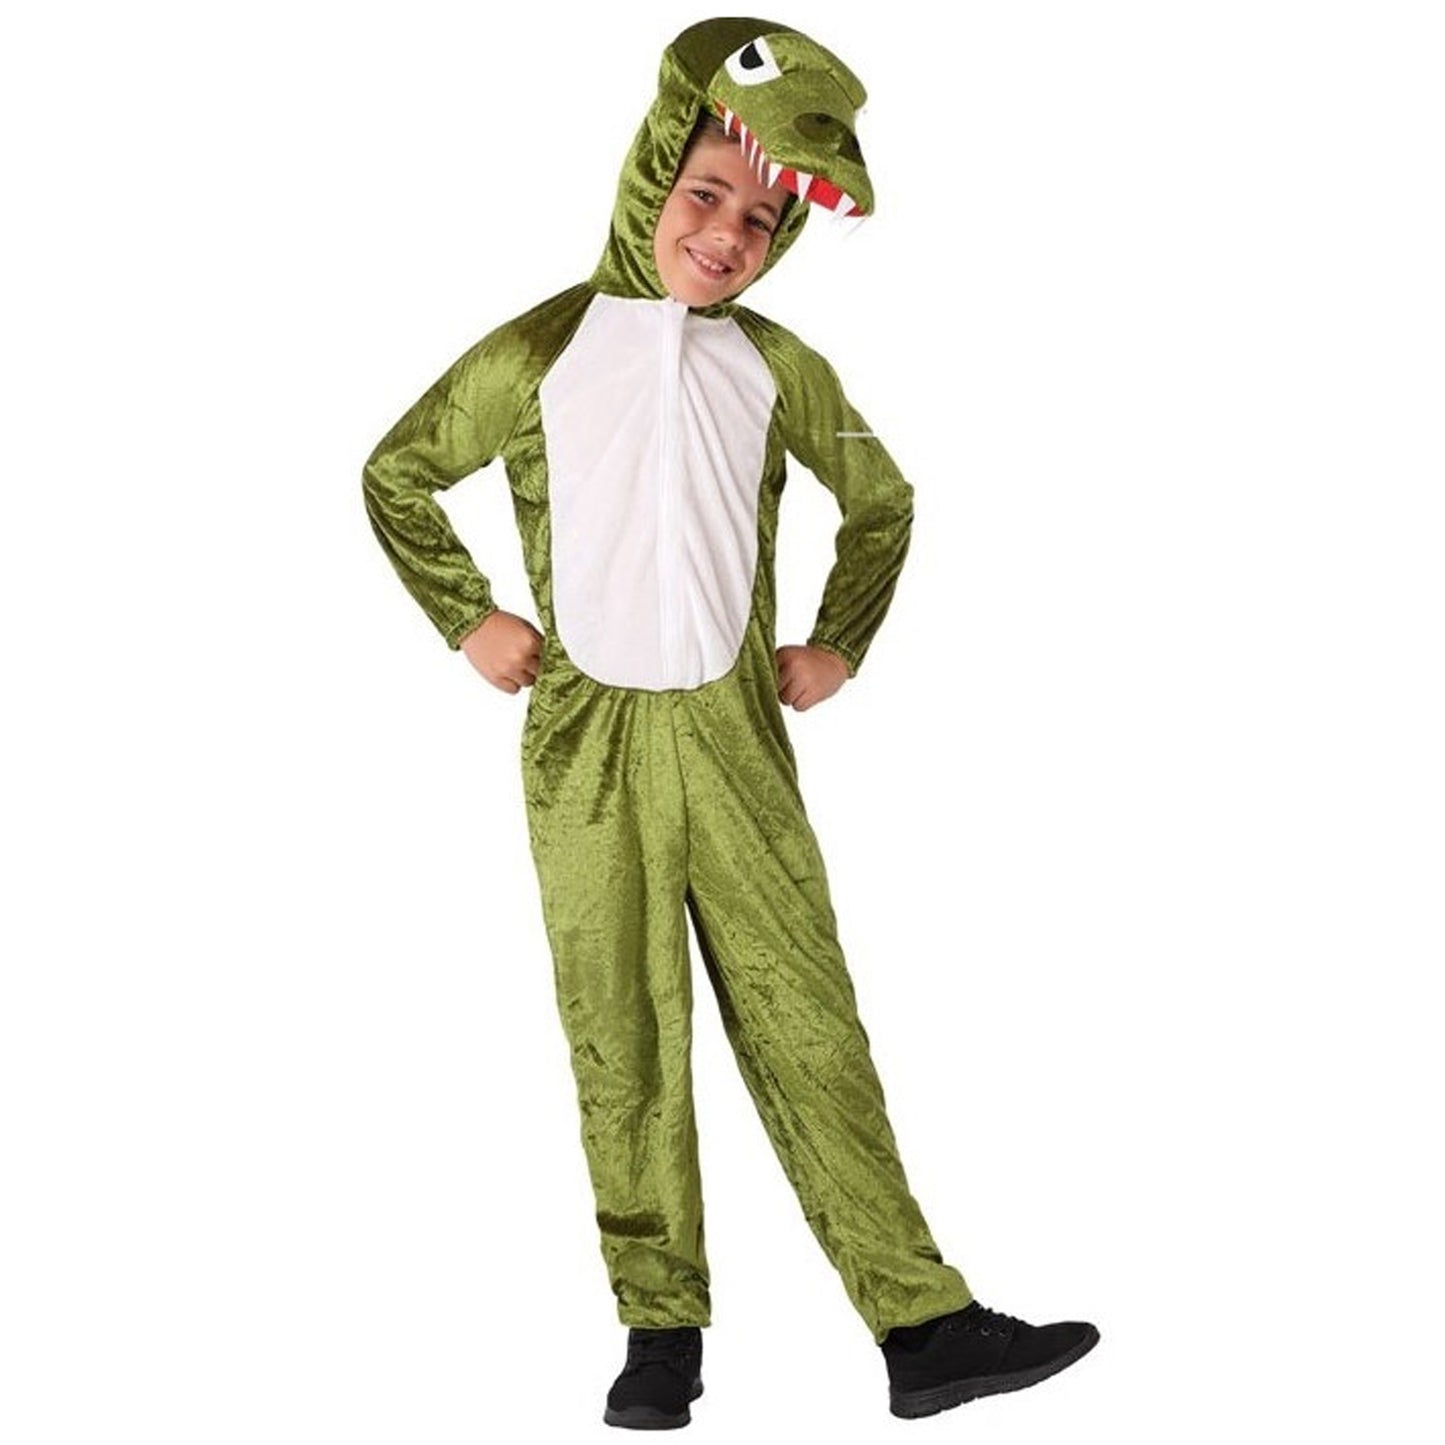 Wally-Gator-Kostüm für Kinder